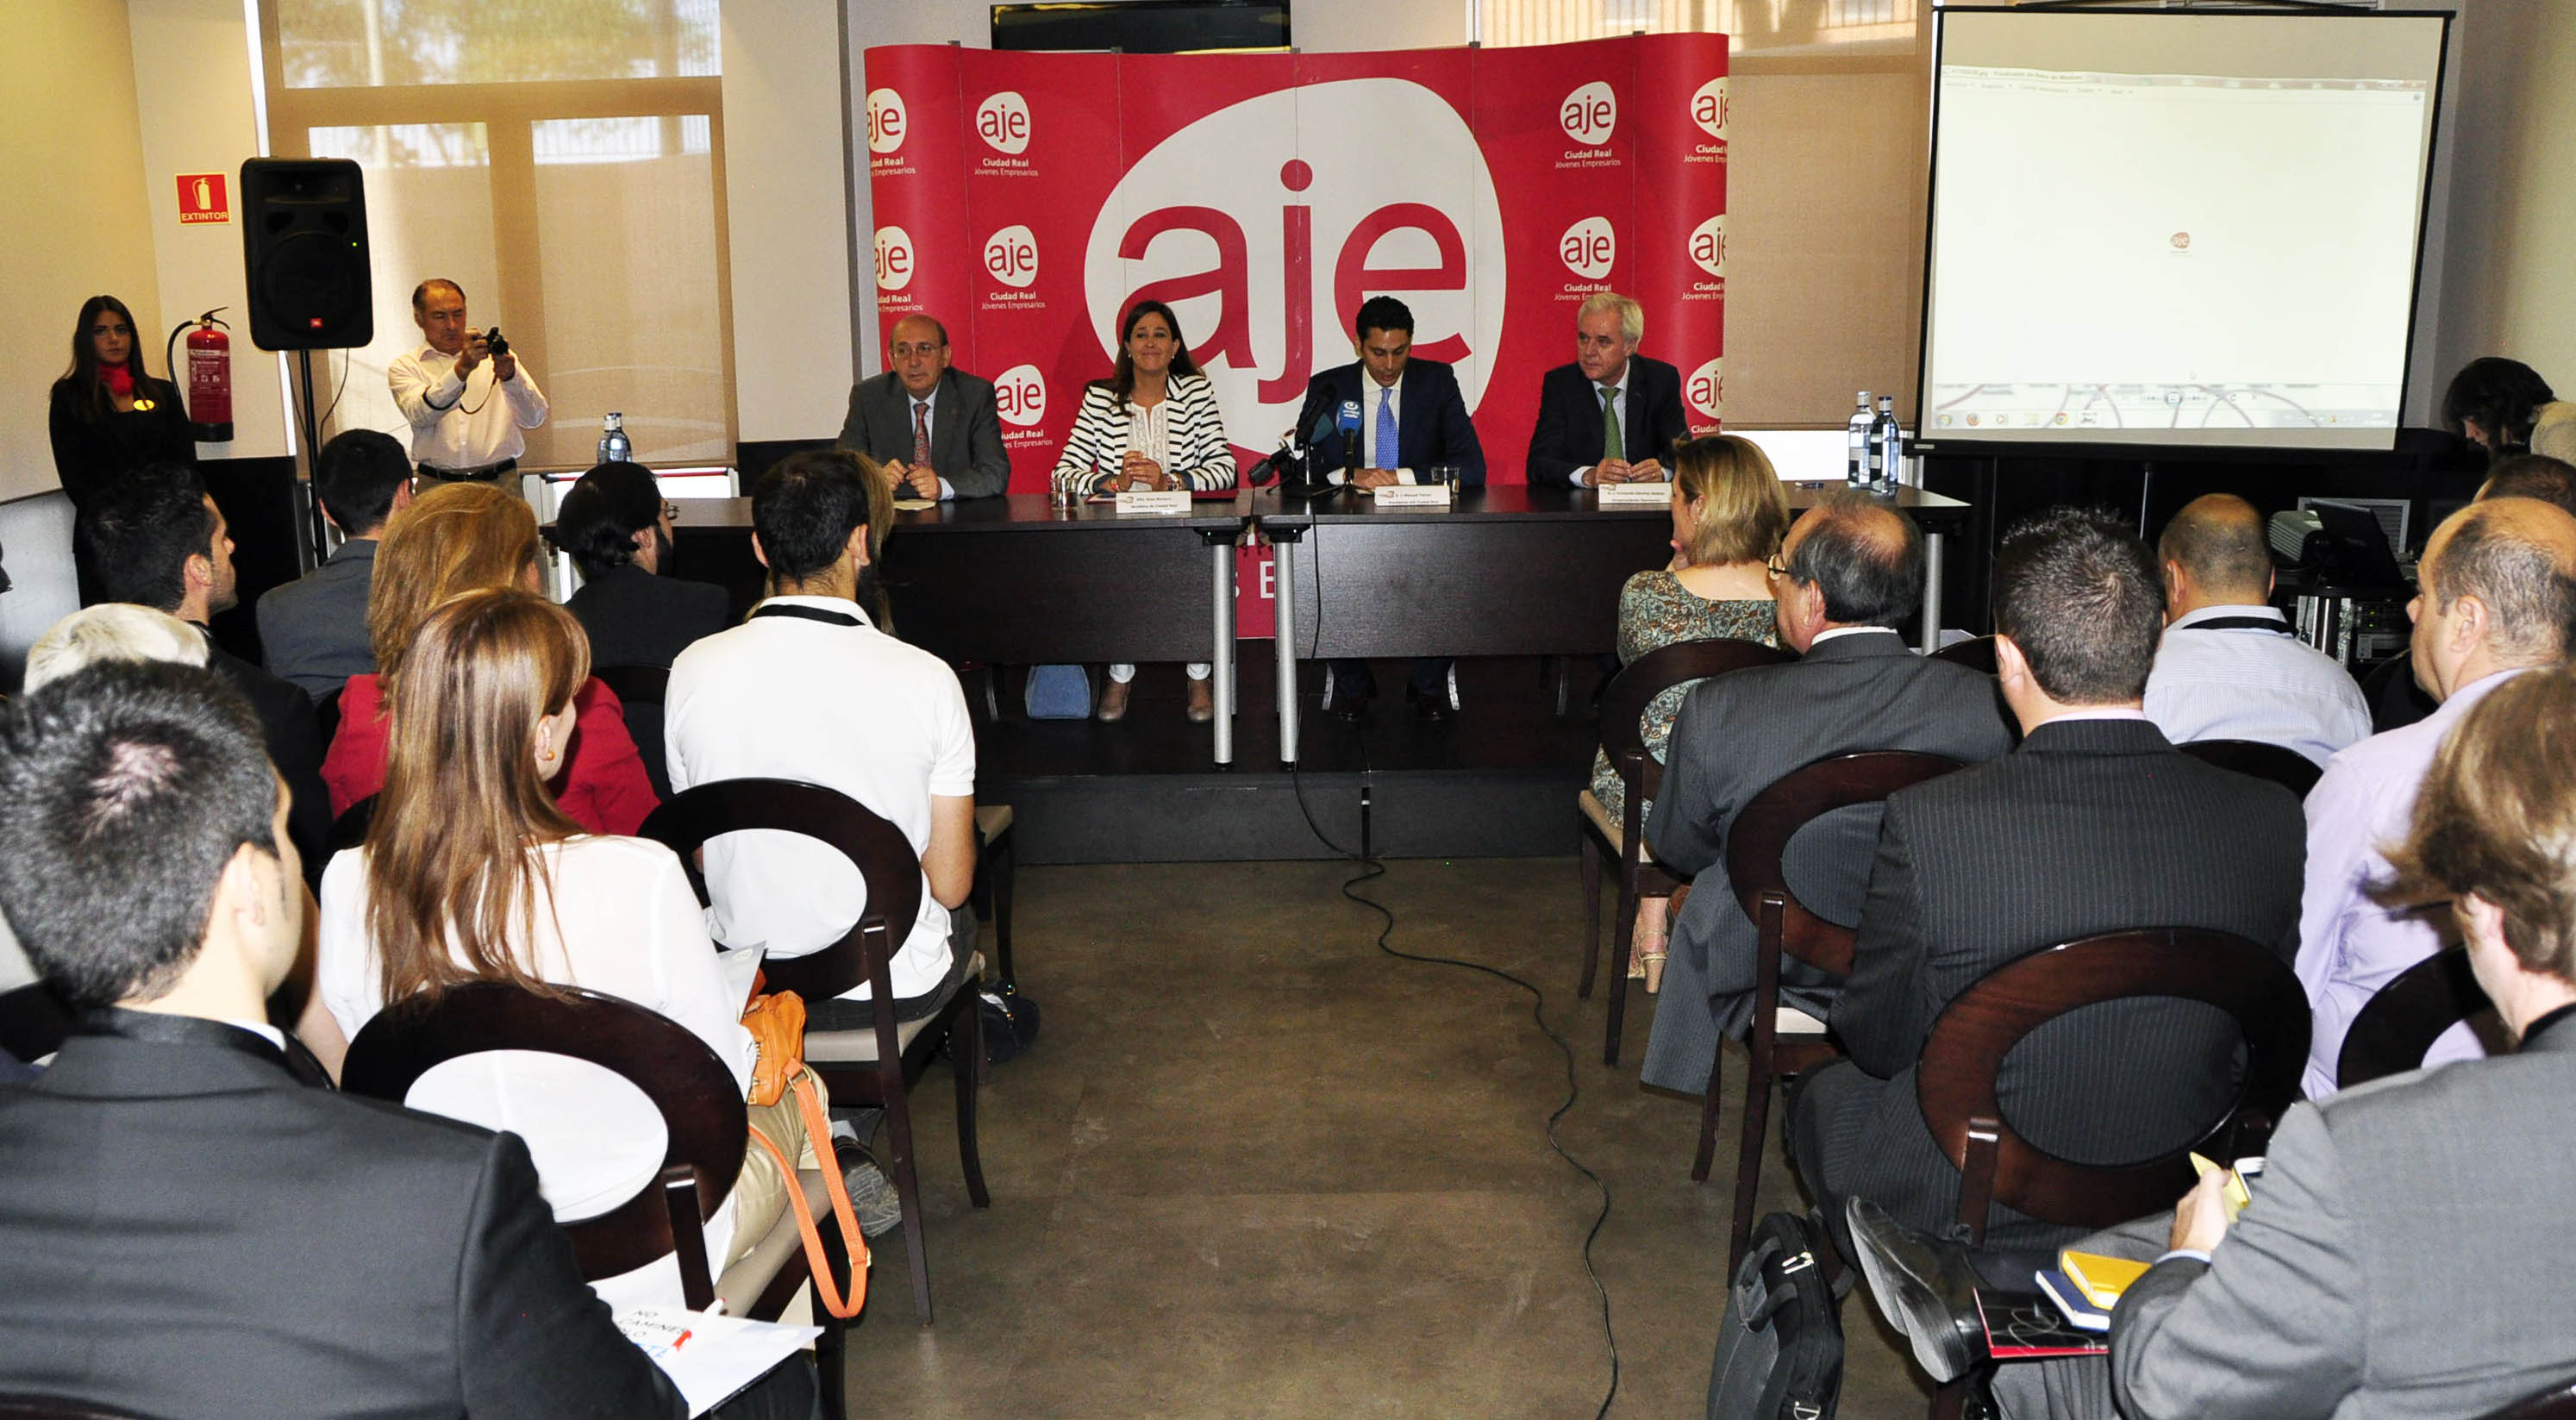 La alcaldesa de Ciudad Real inaugura la plataforma de negocio Conecta 4 de AJE